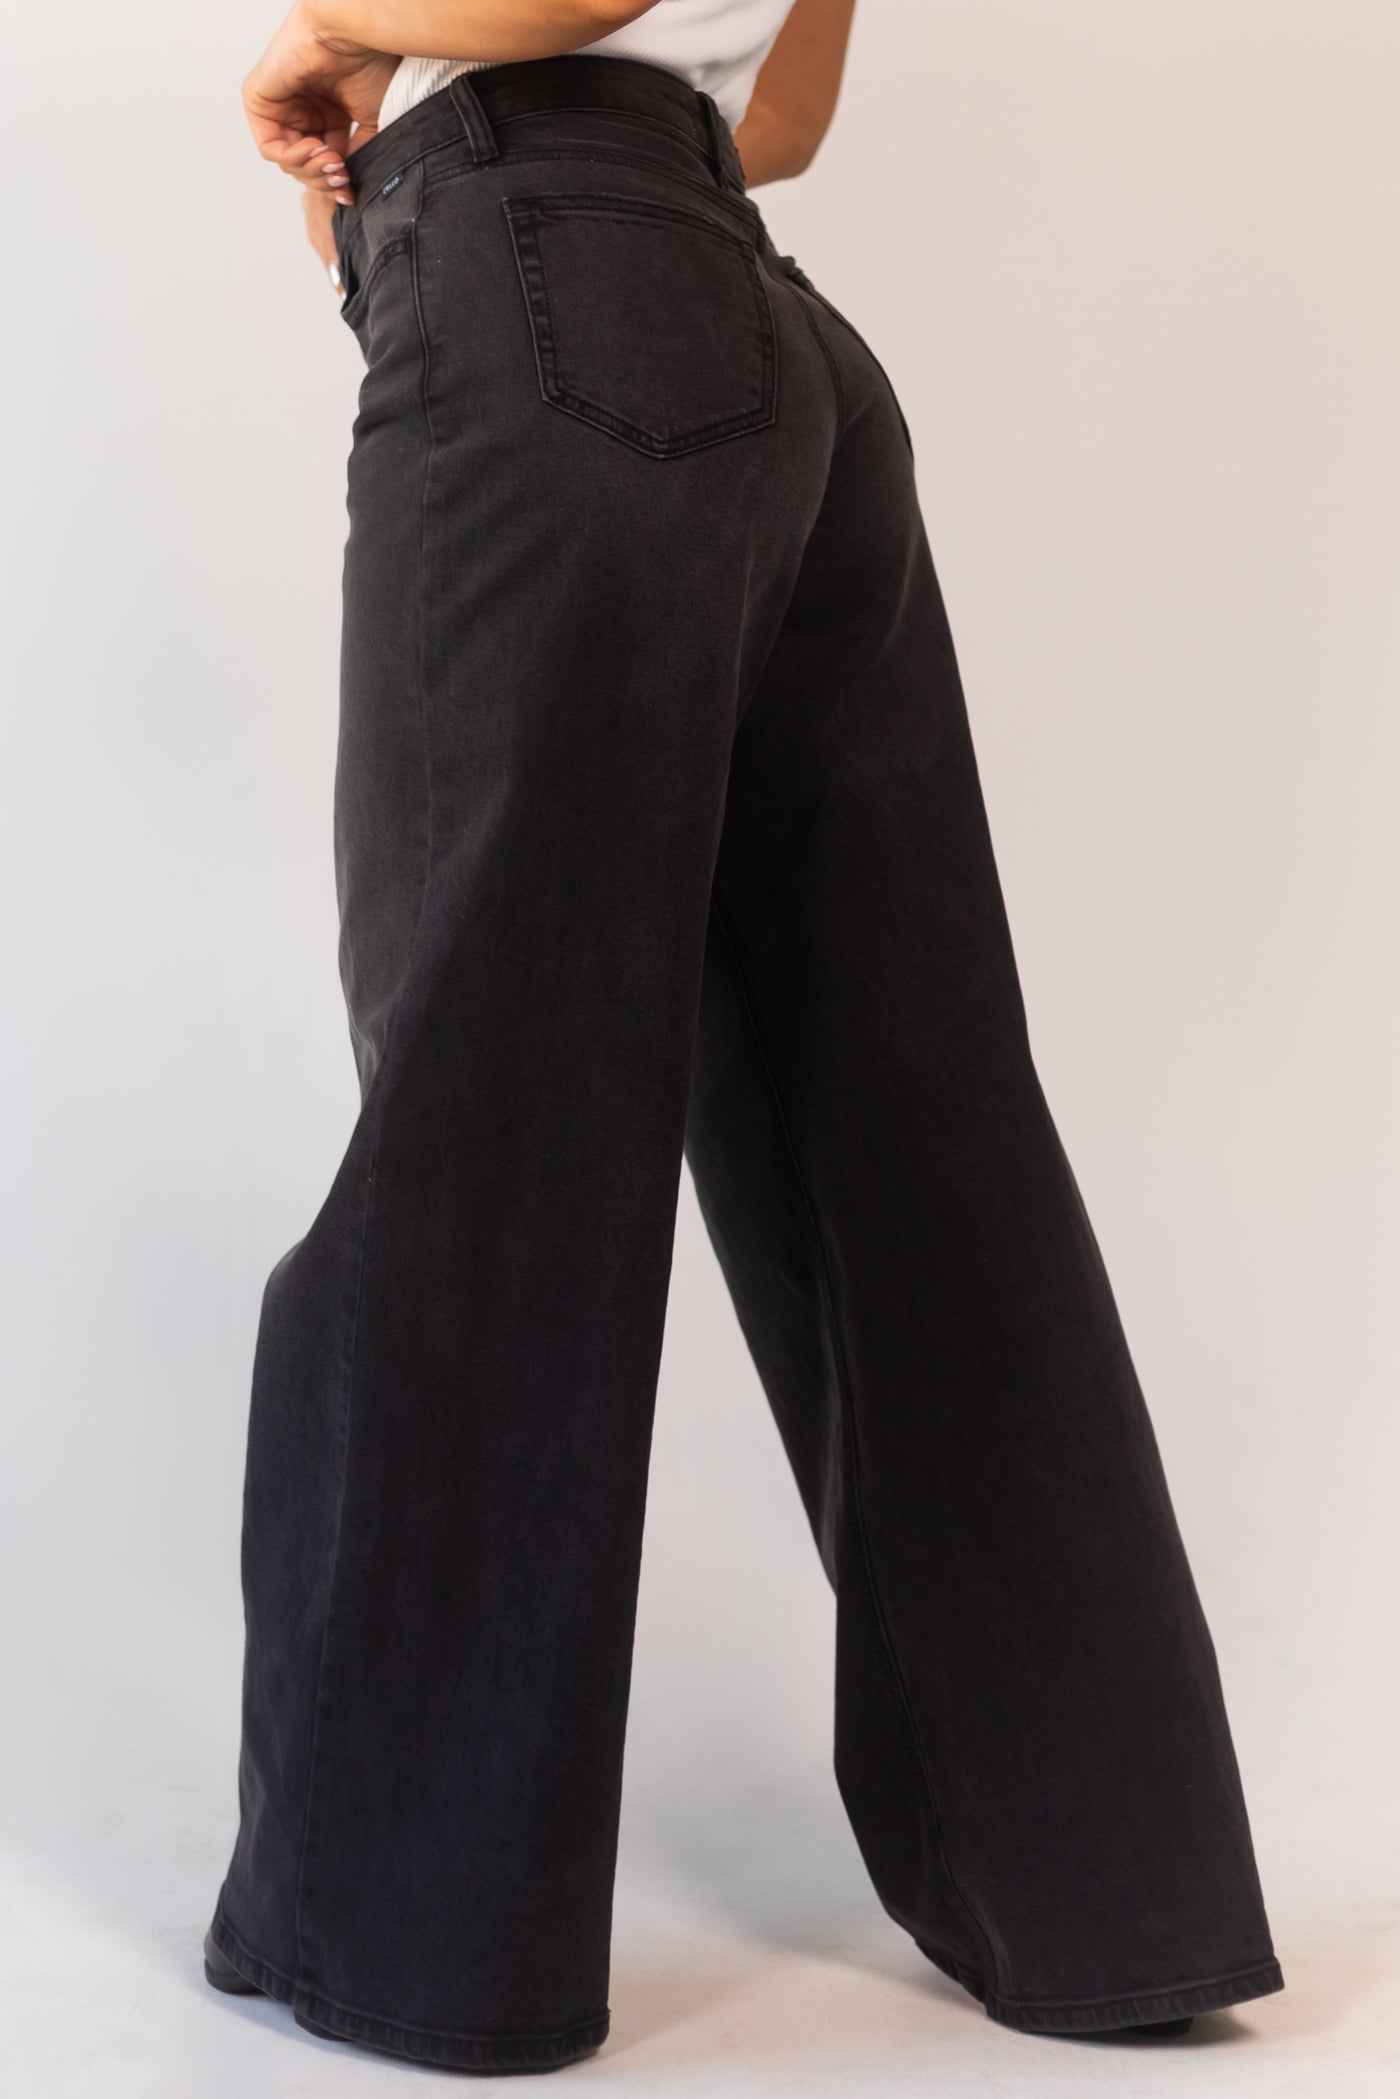 Washed Black Vintage Zipper Fly Wide Leg Jeans